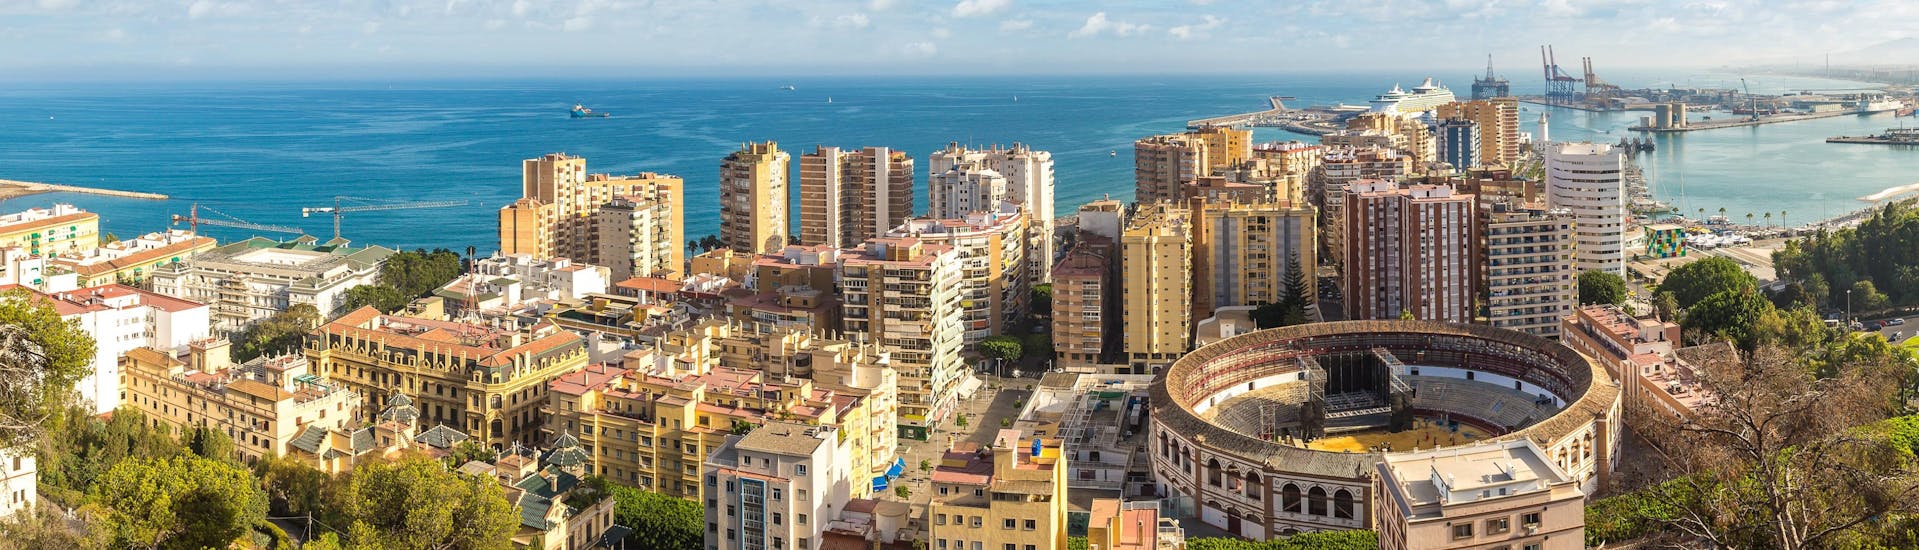 Uitzicht over de stad Malaga, een populair vertrekpunt voor boottochten.